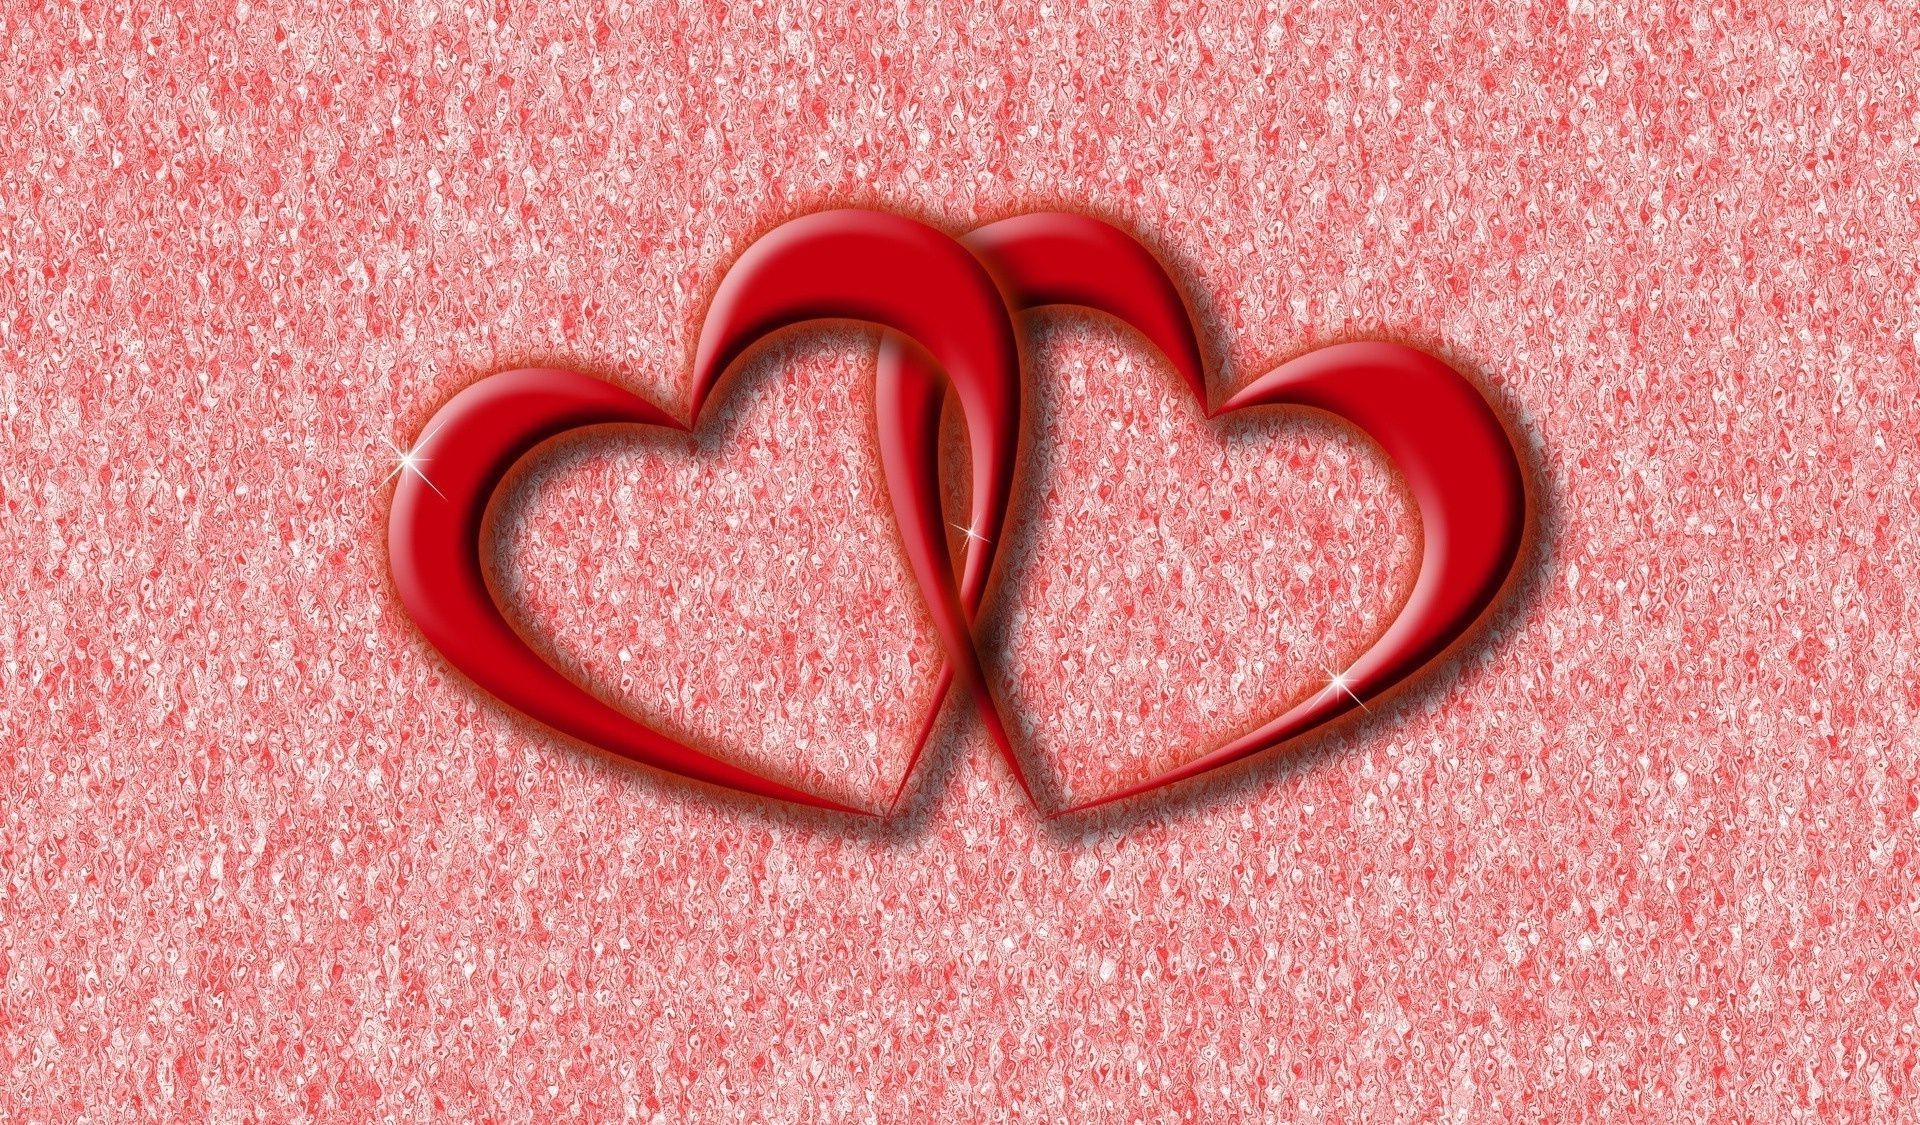 Heart love Valentine valentines day heart